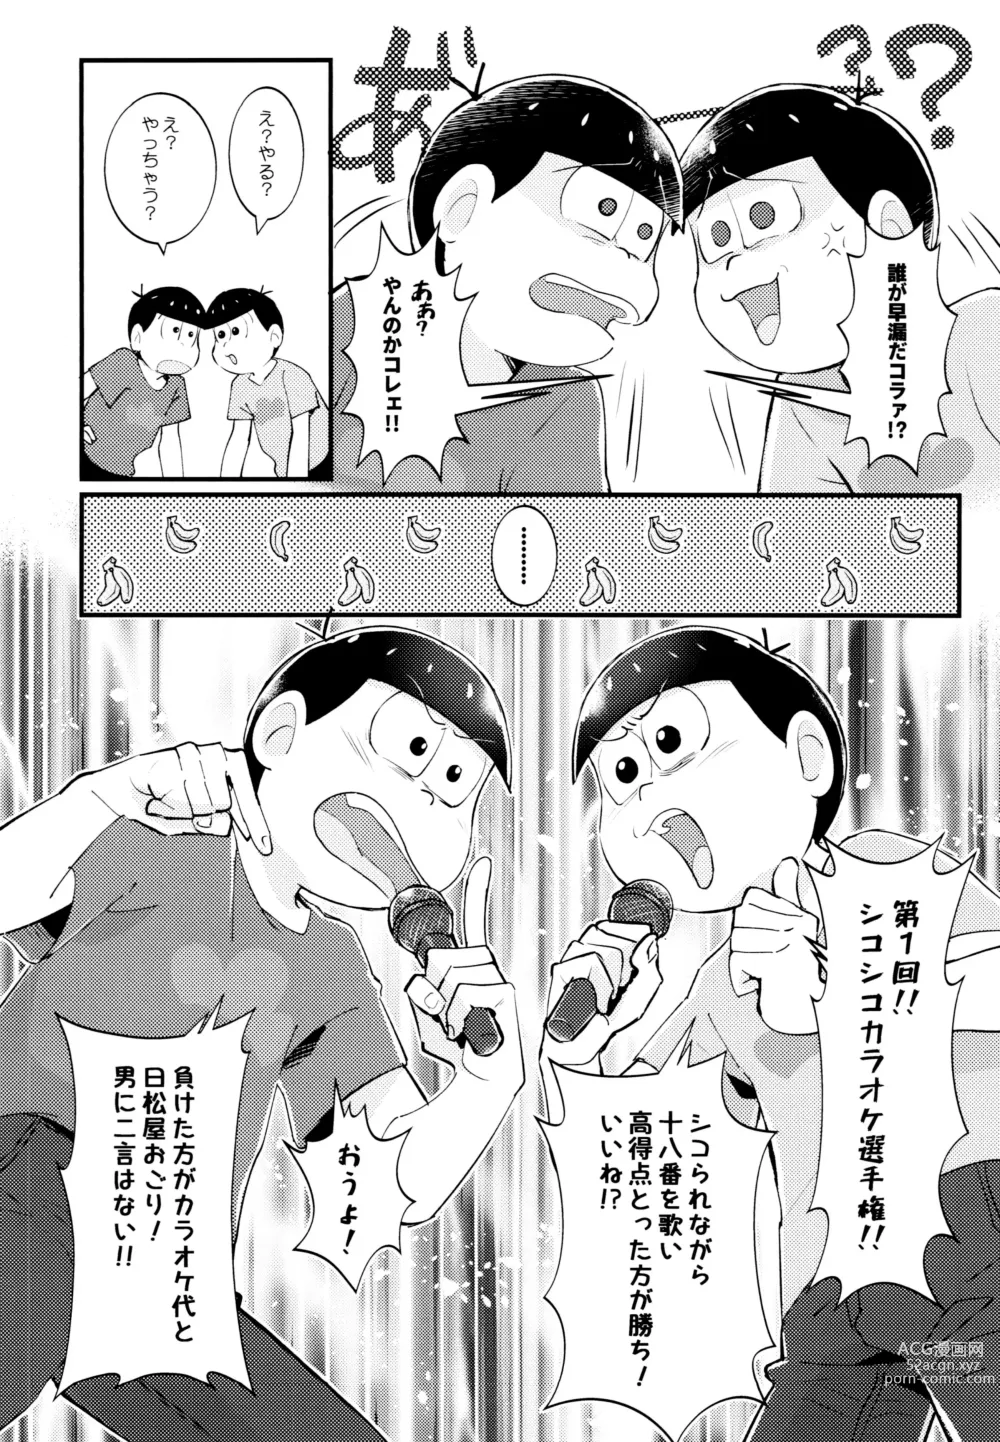 Page 7 of doujinshi Manatsu no!! Shikoshiko Karaoke Dai Battle!!